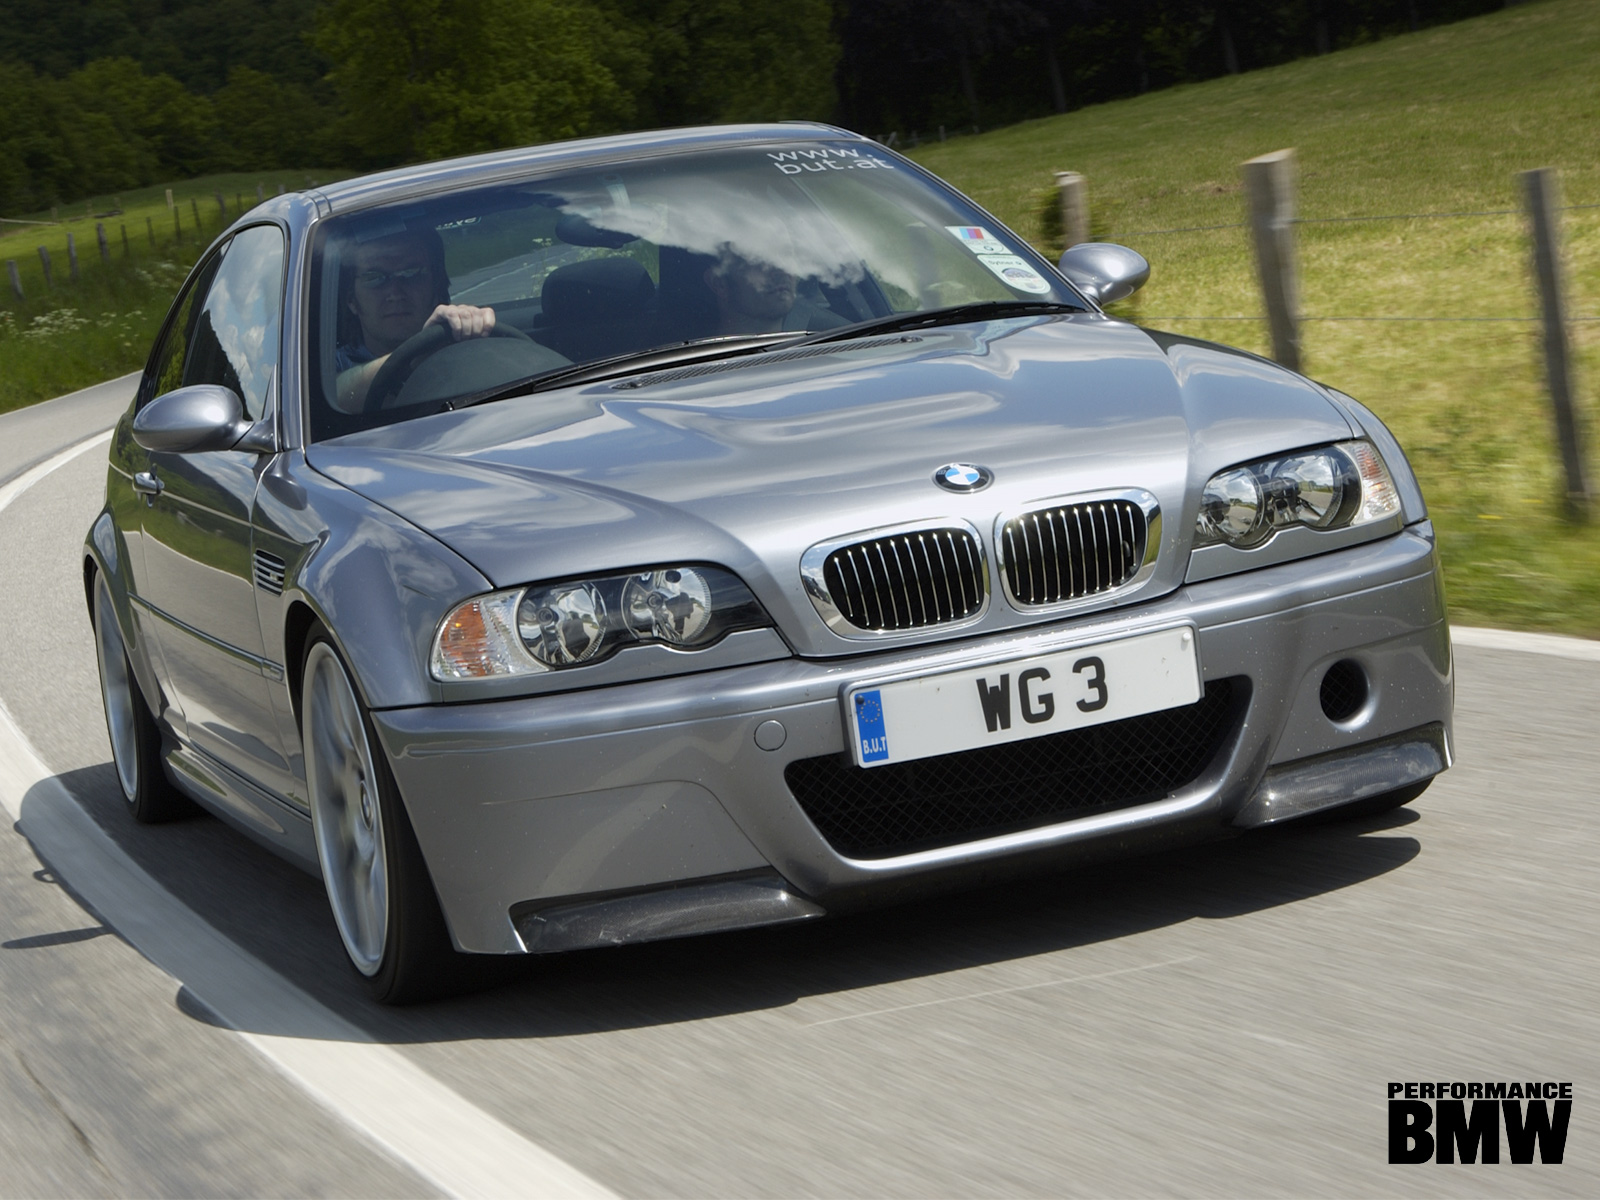 2001 BMW M3 CSL Lightweight